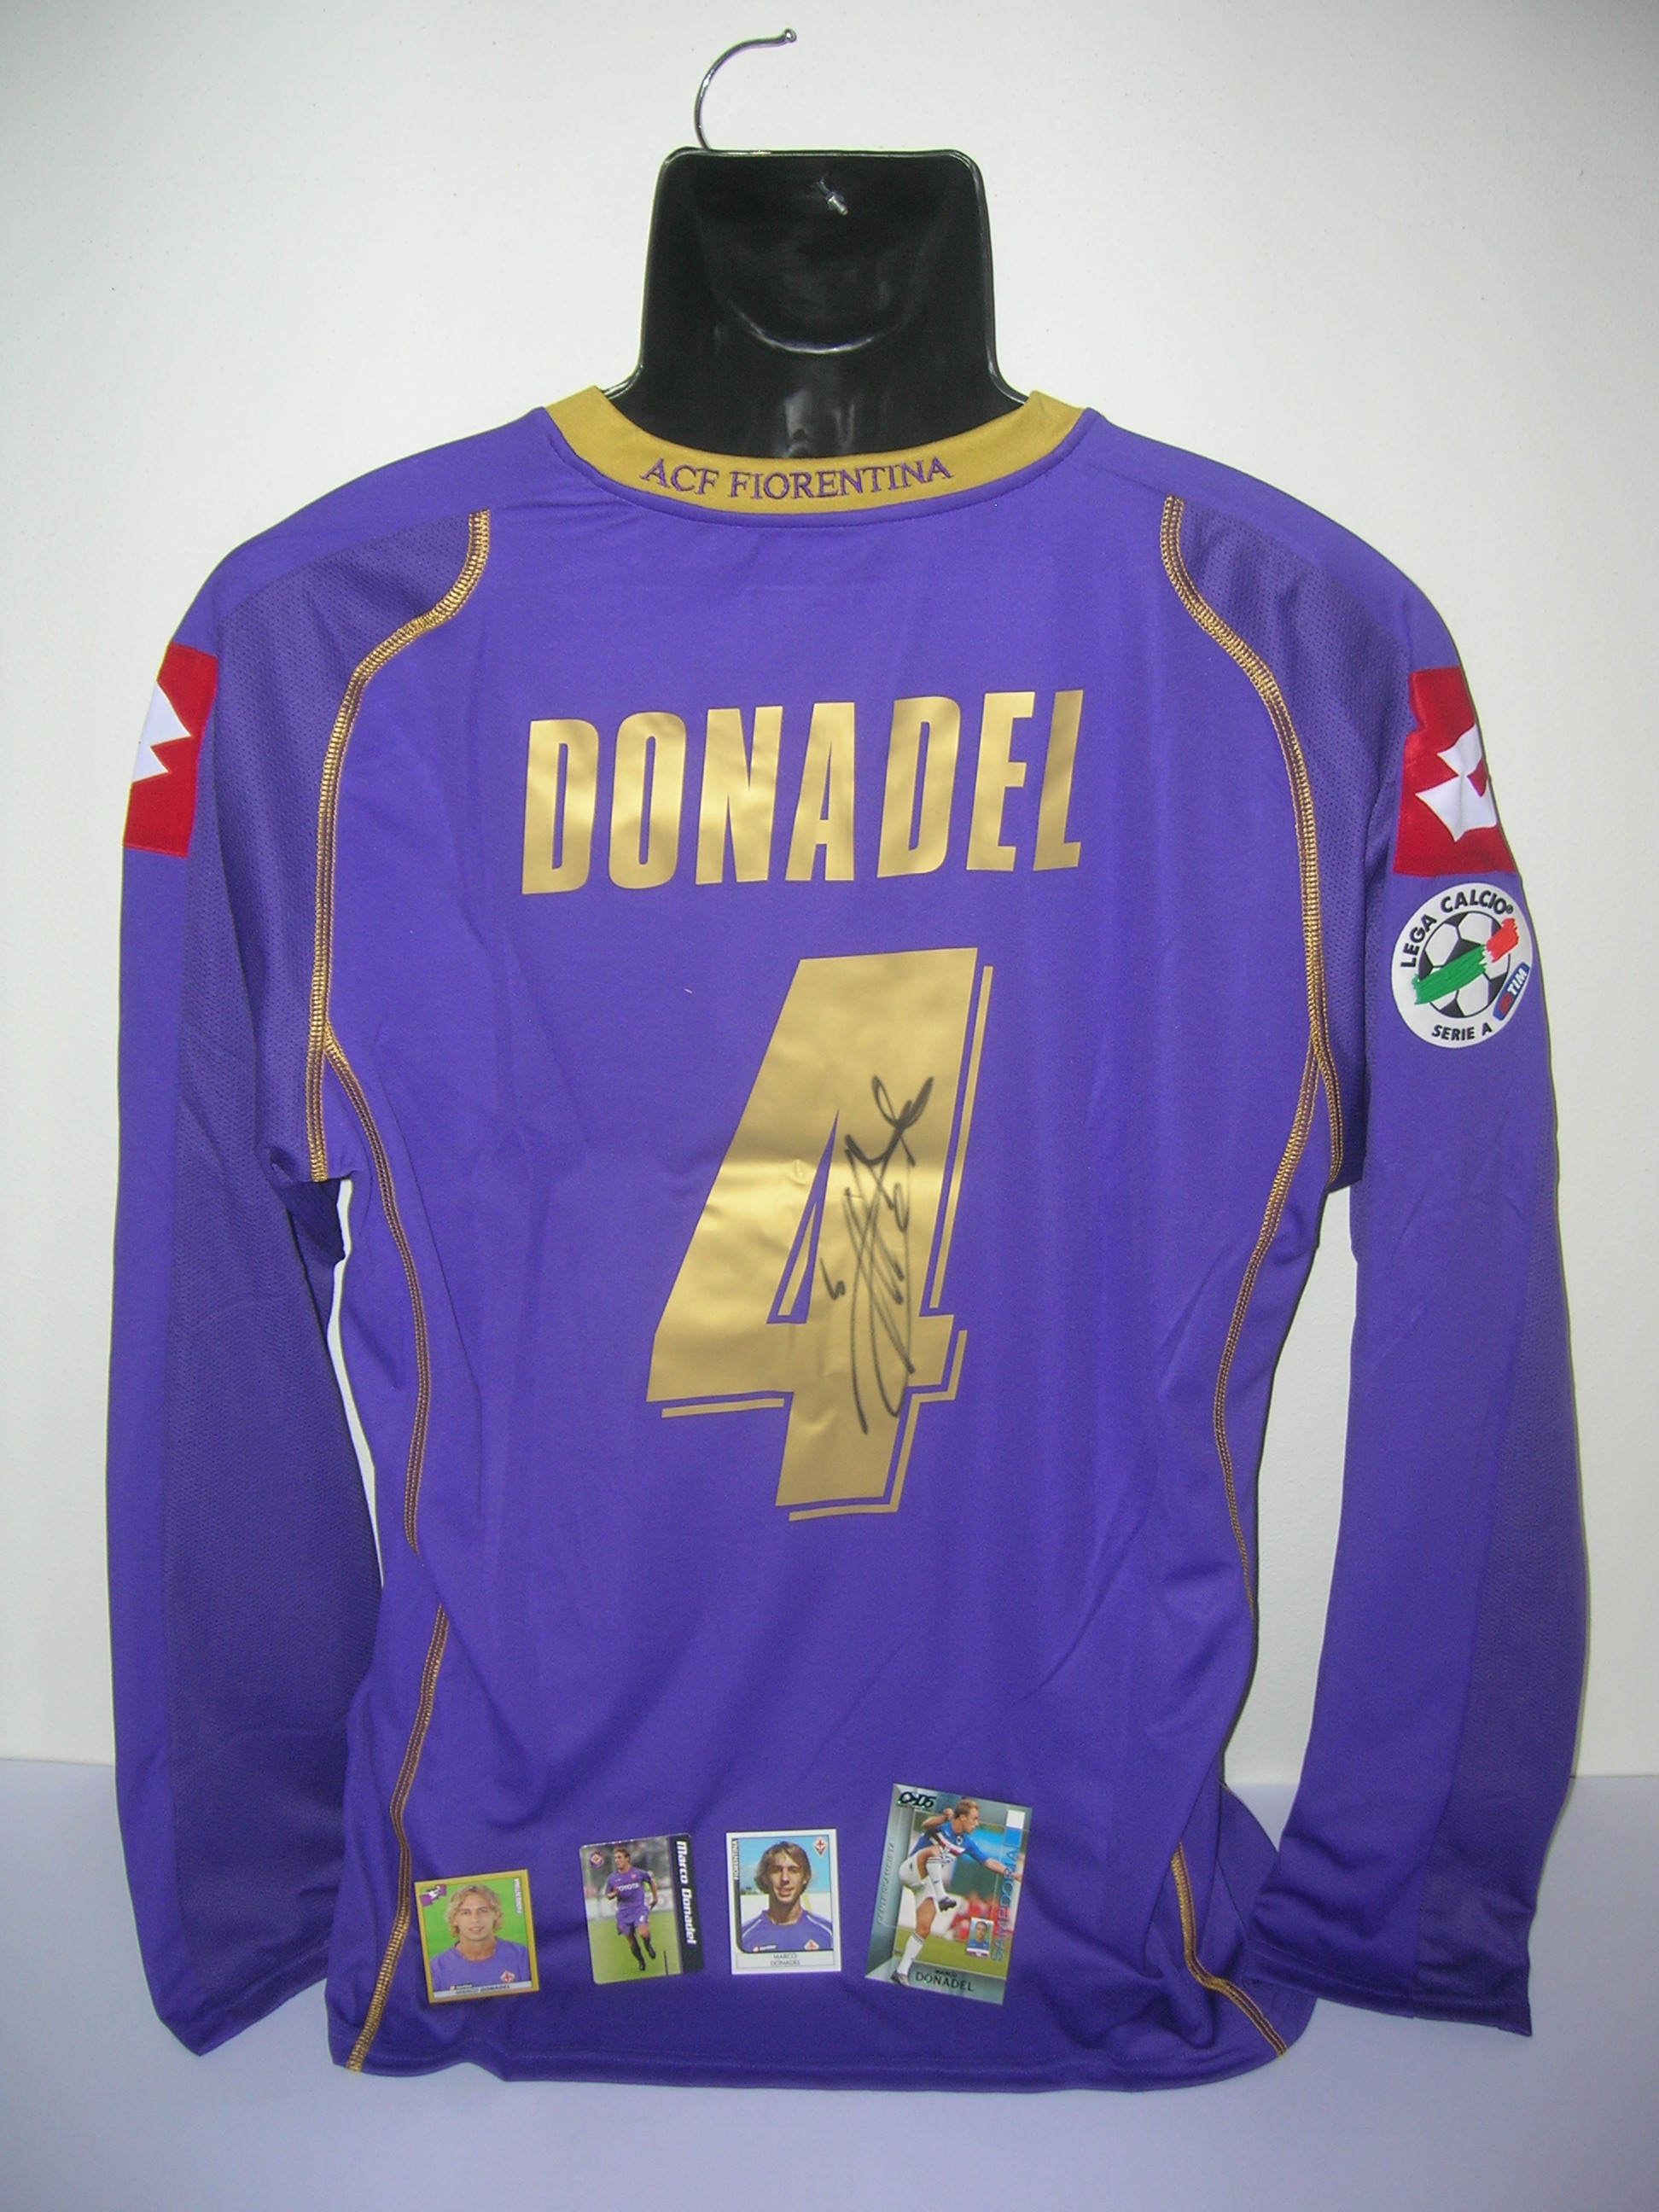 Fiorentina  Donadel  4-B